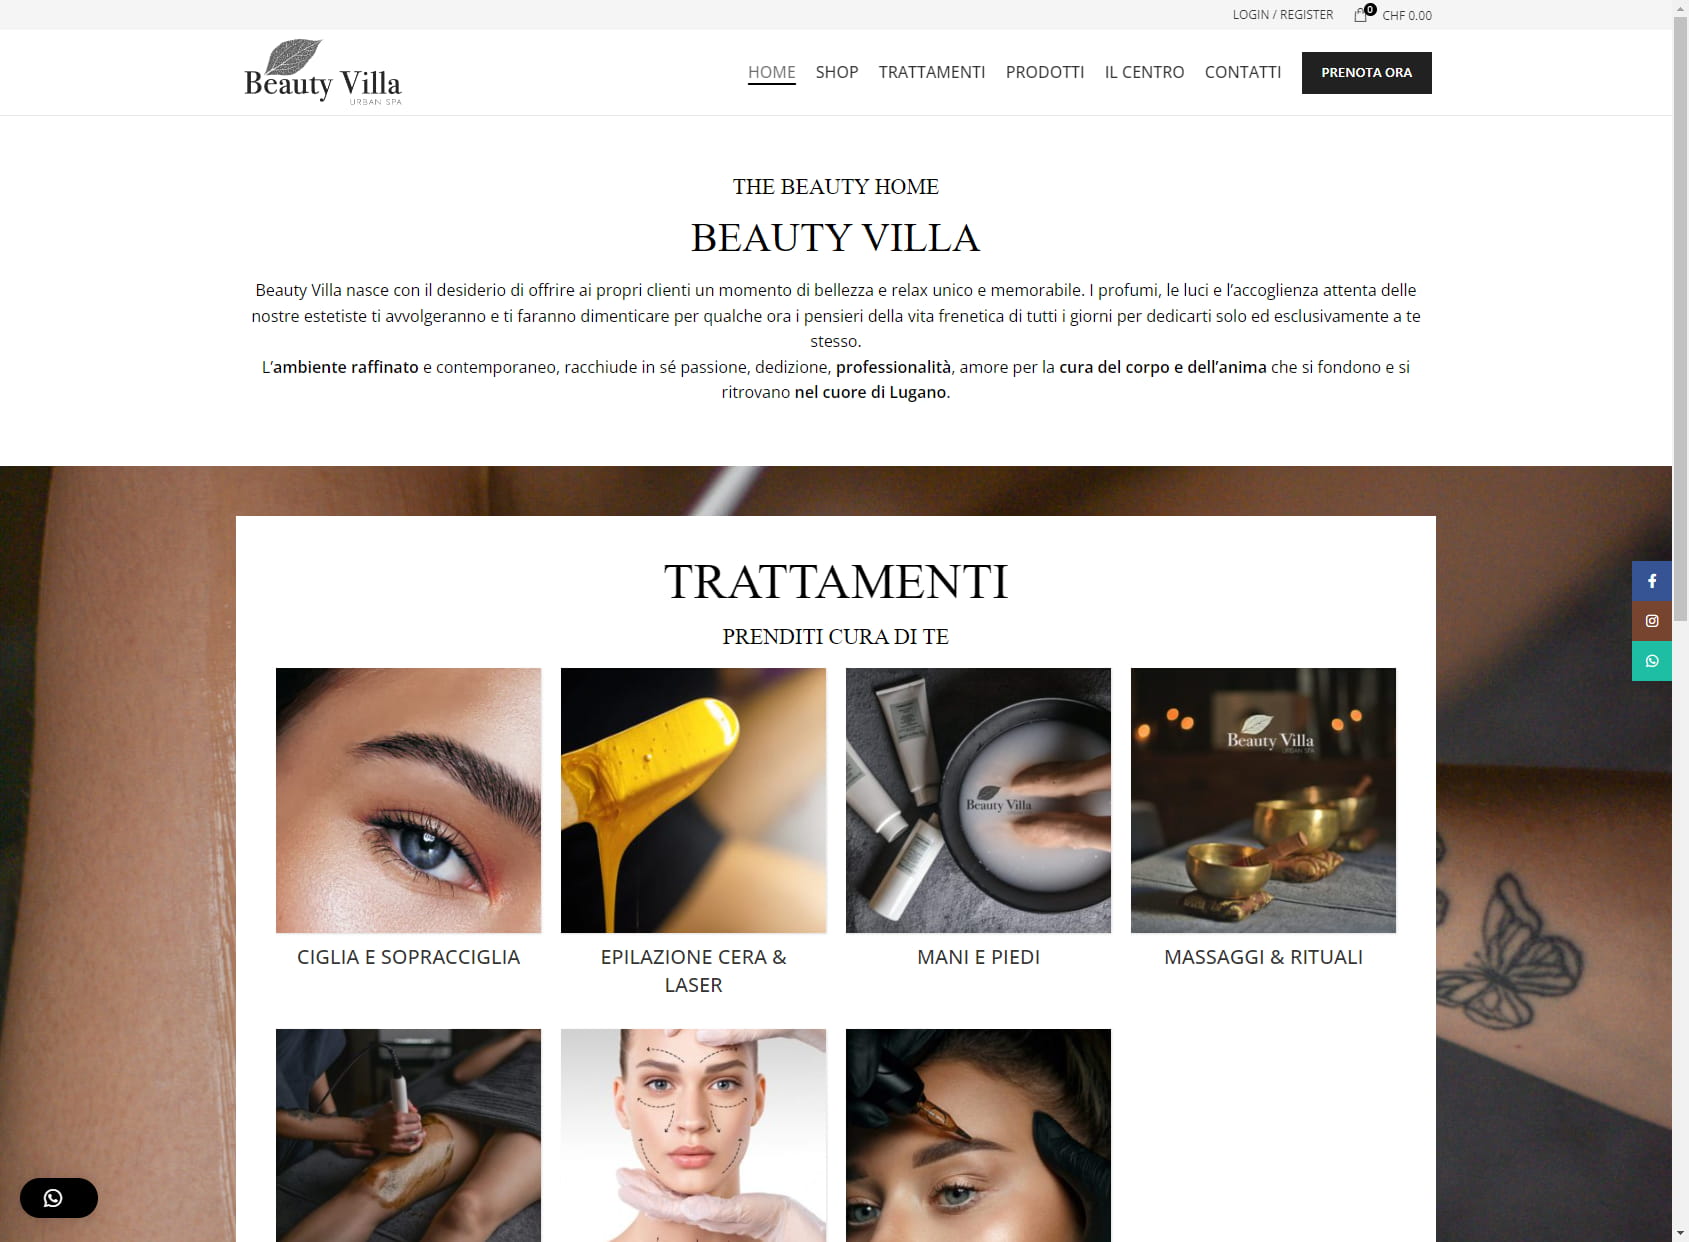 Beauty Villa Lugano - Epilazione Laser, Trucco Permanente, Trattamenti Viso Anti-Age.